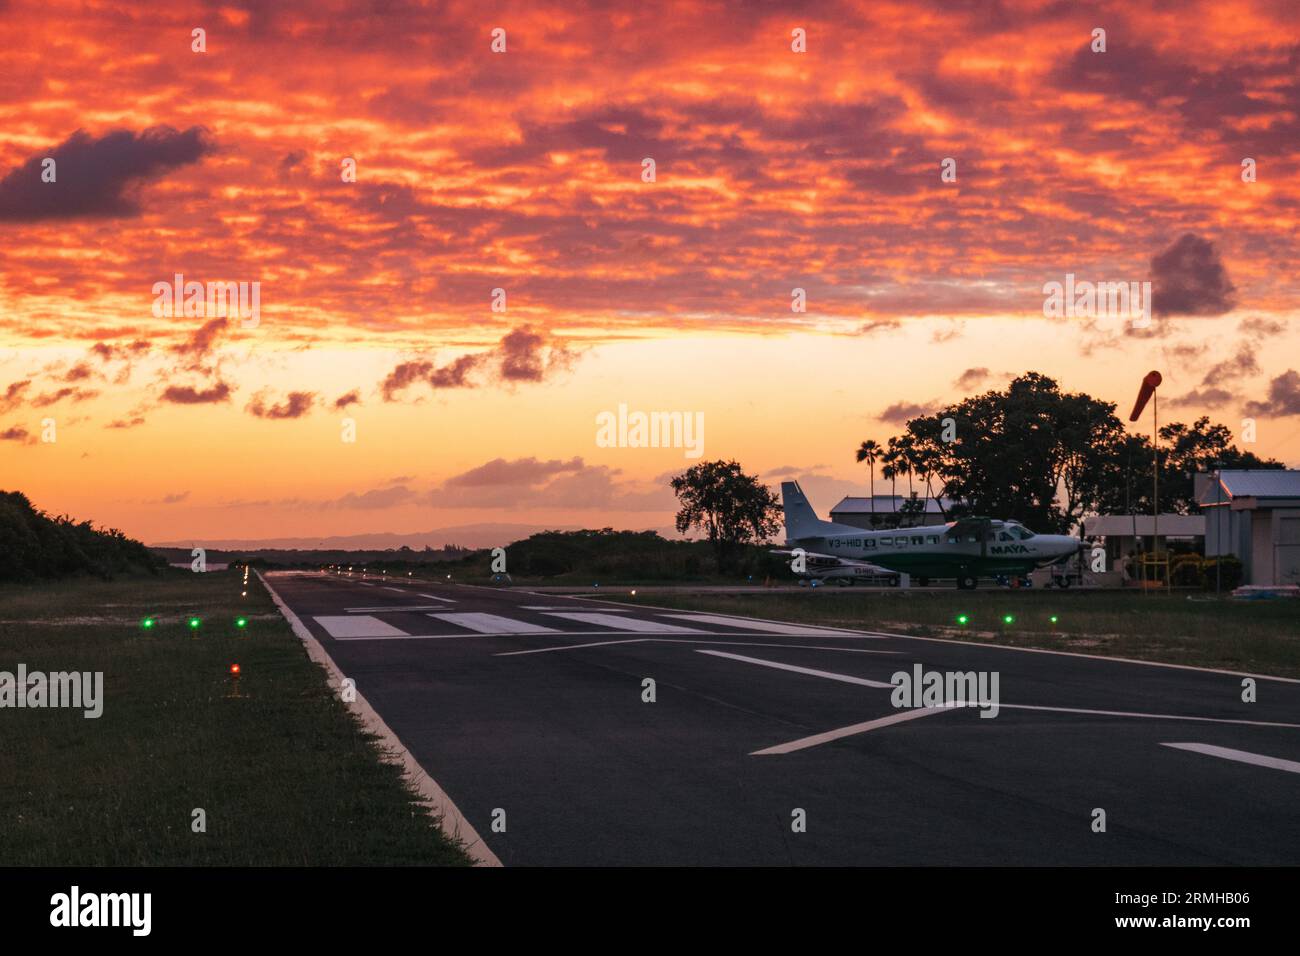 Les couleurs or et orange du coucher du soleil frappent la piste de l'aéroport de Placencia, au sud-est du Belize Banque D'Images